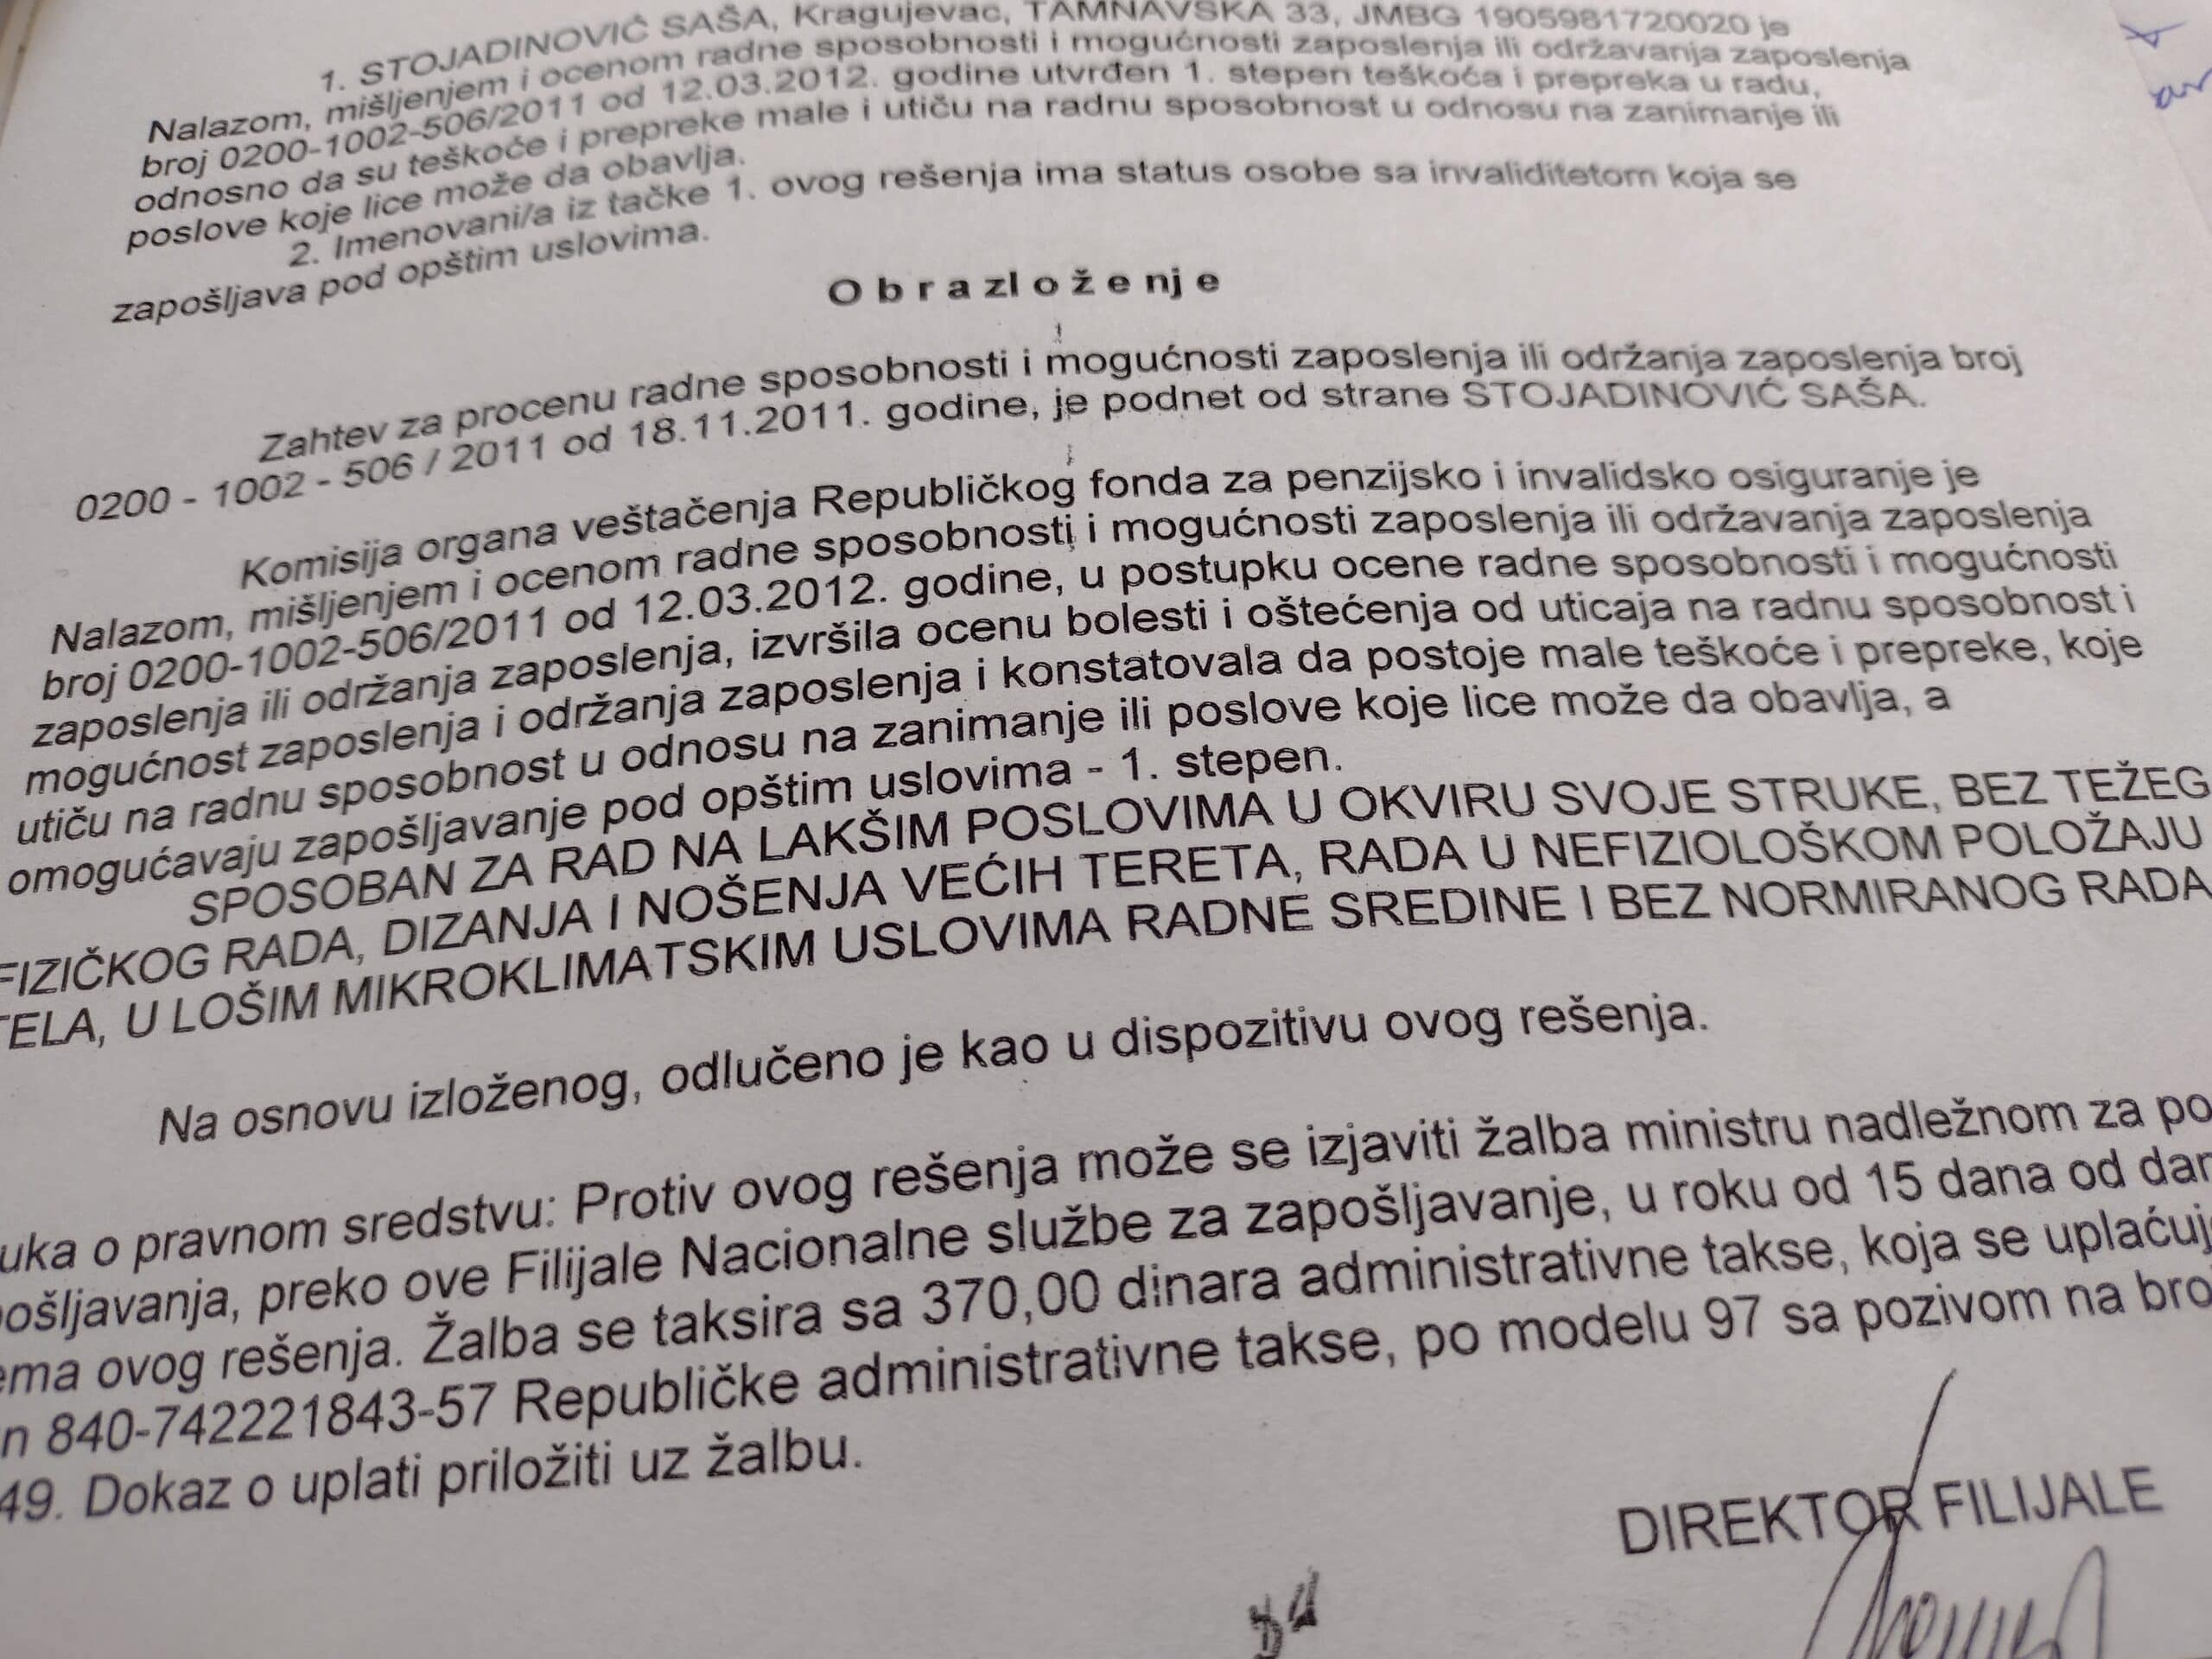 Fabrika „Zastava oružje” već deceniju ne uvažava invalidski status radnika Saše Stojadinovića 2